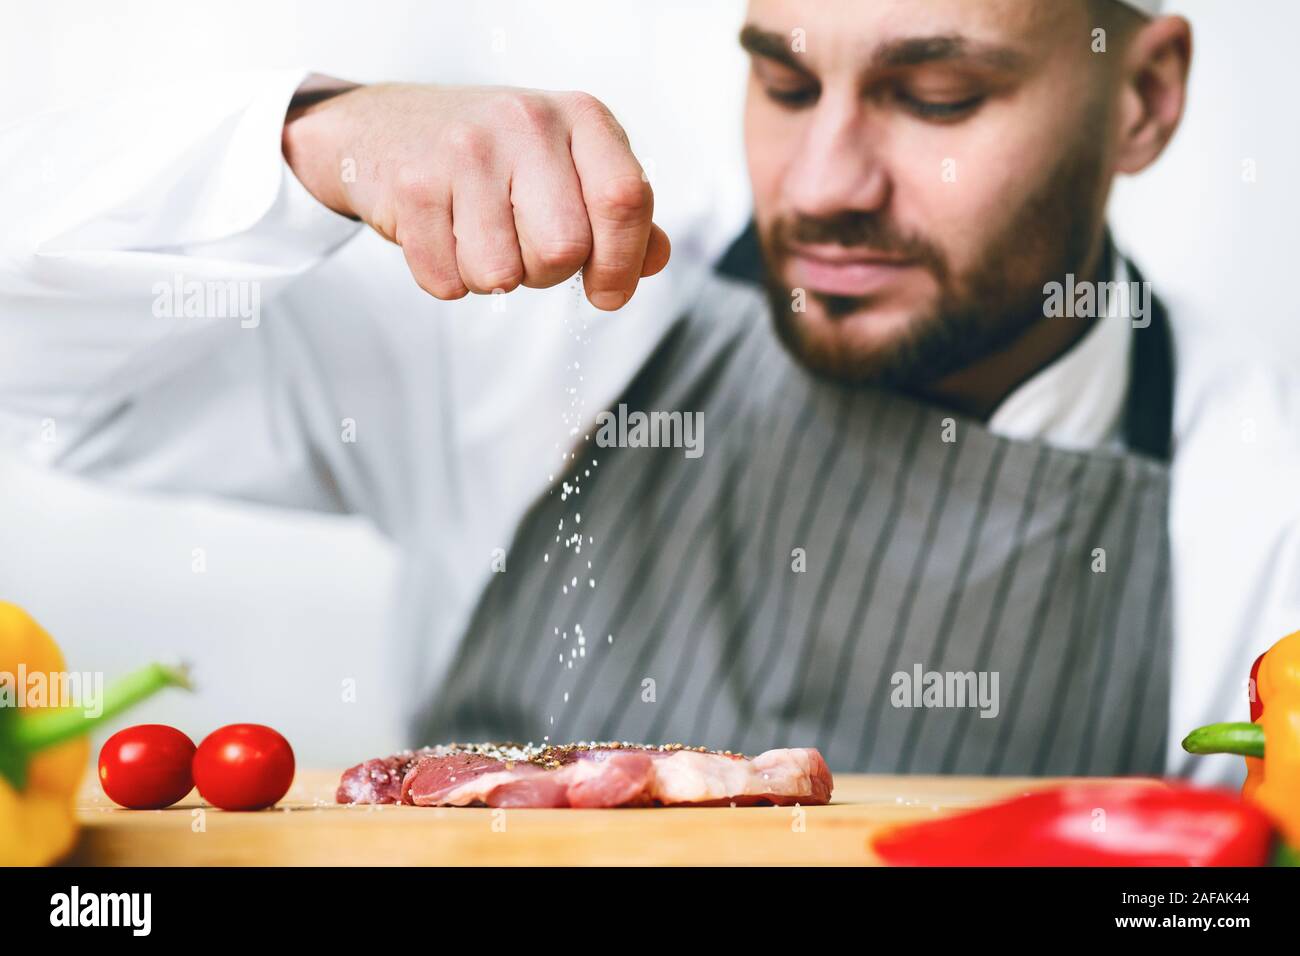 Koch Mann würzen Fleisch kochen Essen im Restaurant Küche Hallenbad  Stockfotografie - Alamy